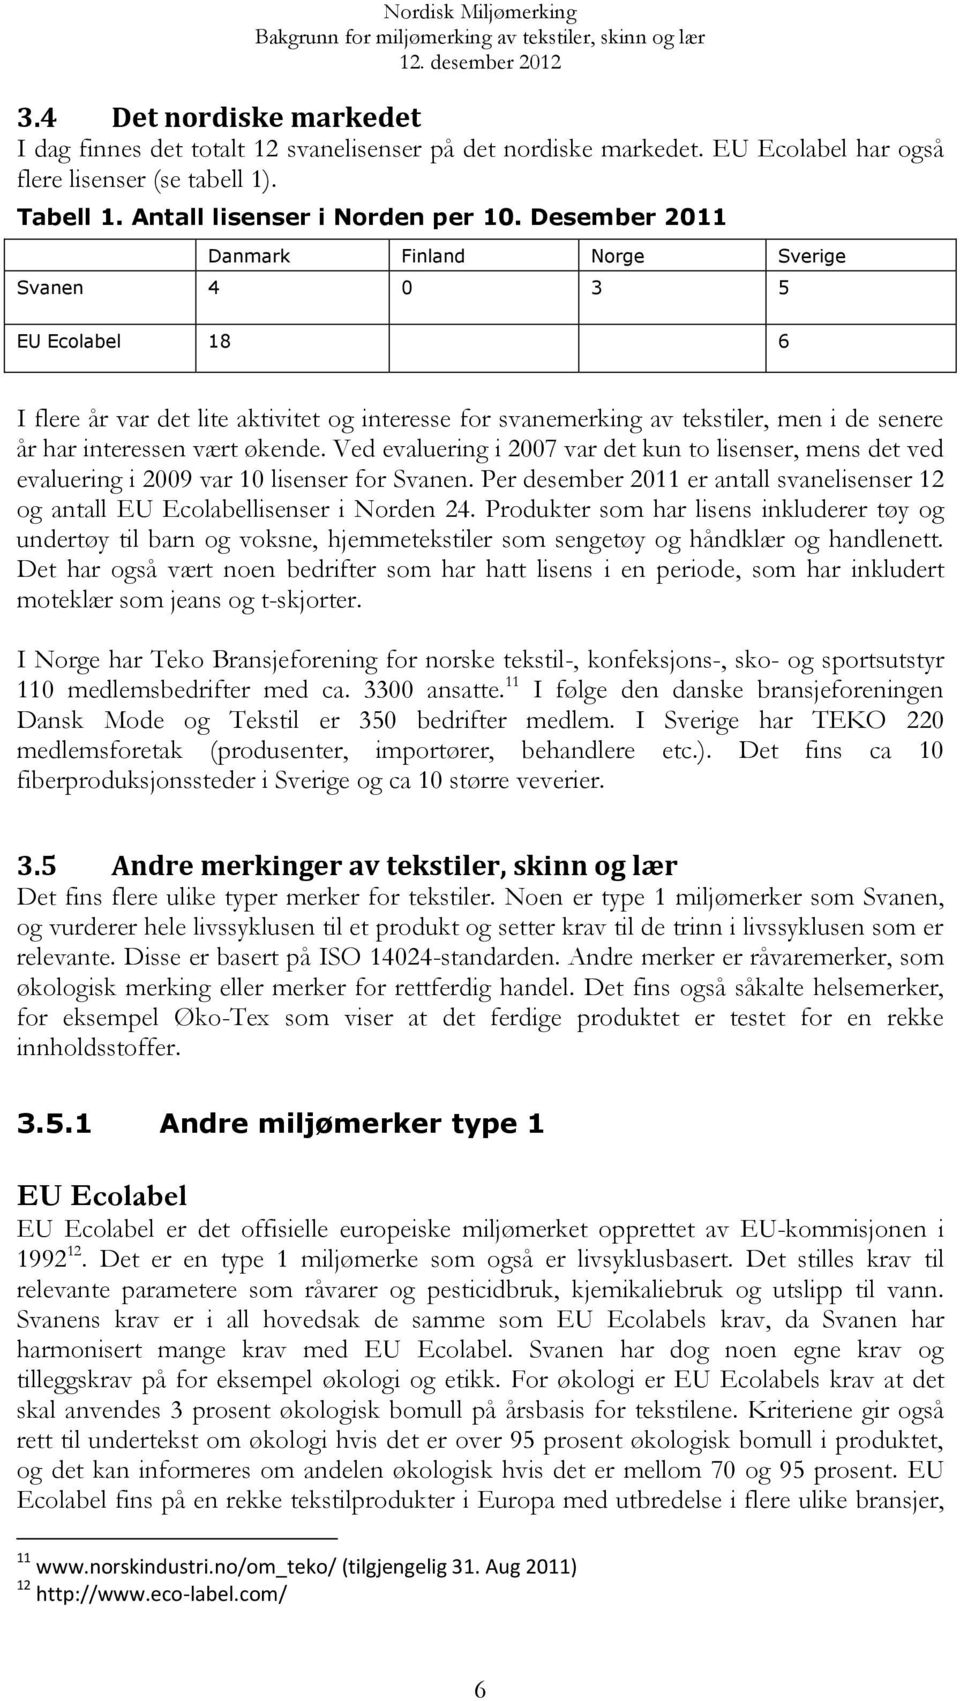 Ved evaluering i 2007 var det kun to lisenser, mens det ved evaluering i 2009 var 10 lisenser for Svanen. Per desember 2011 er antall svanelisenser 12 og antall EU Ecolabellisenser i Norden 24.